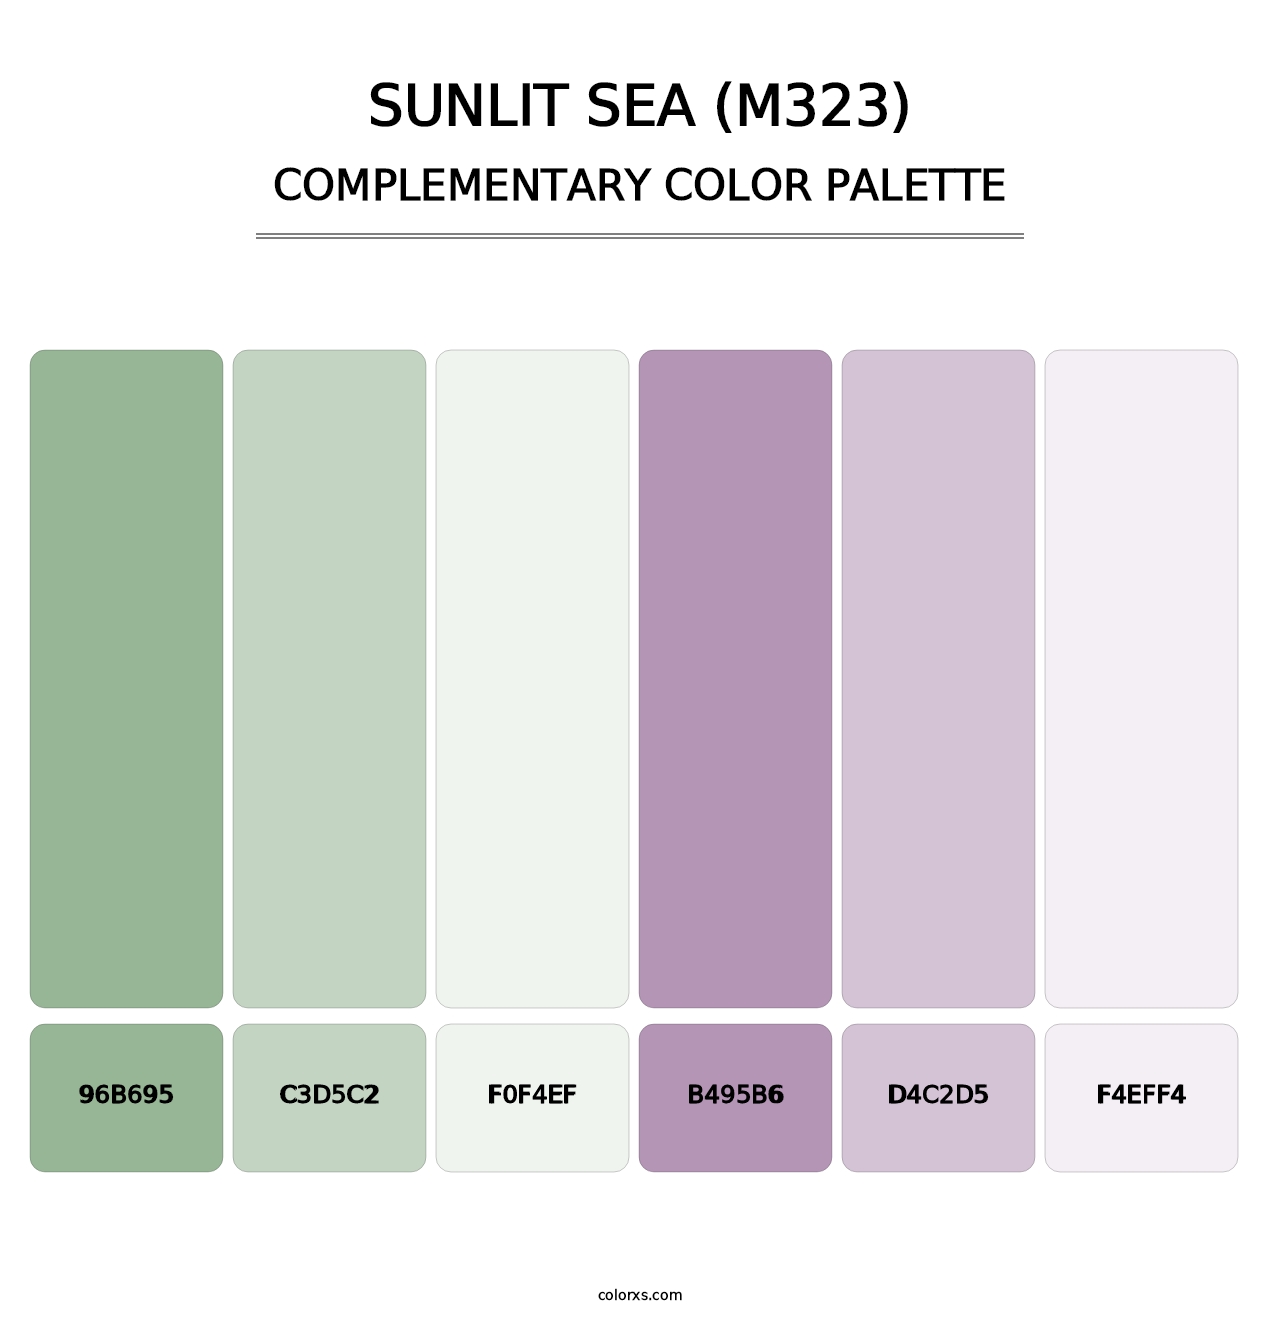 Sunlit Sea (M323) - Complementary Color Palette